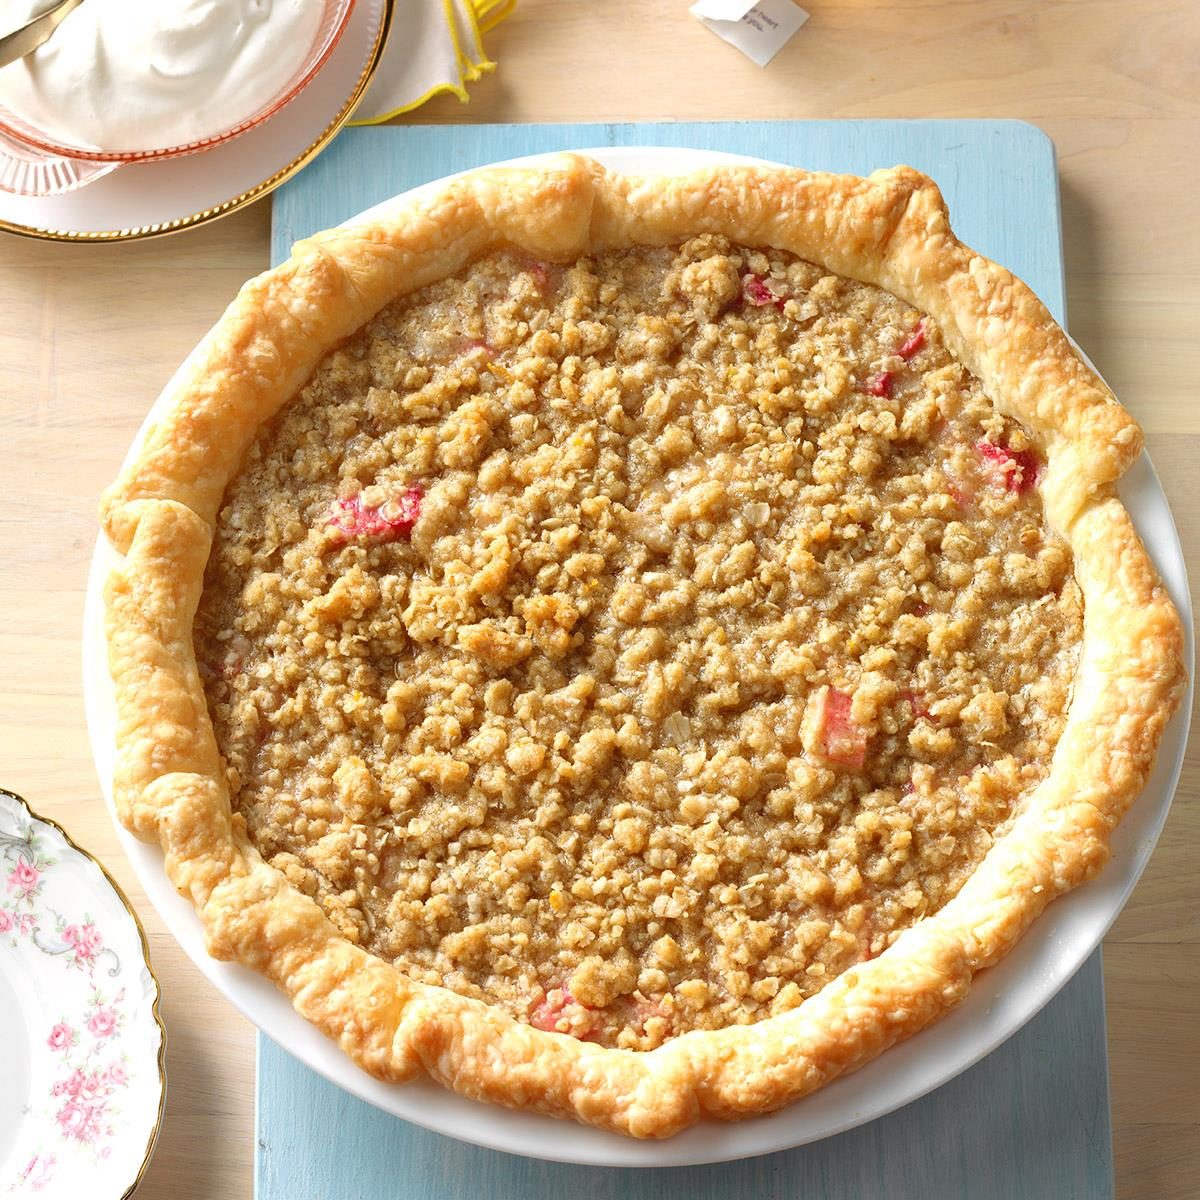 Sour Cream Rhubarb Pie Recipe Taste of Home